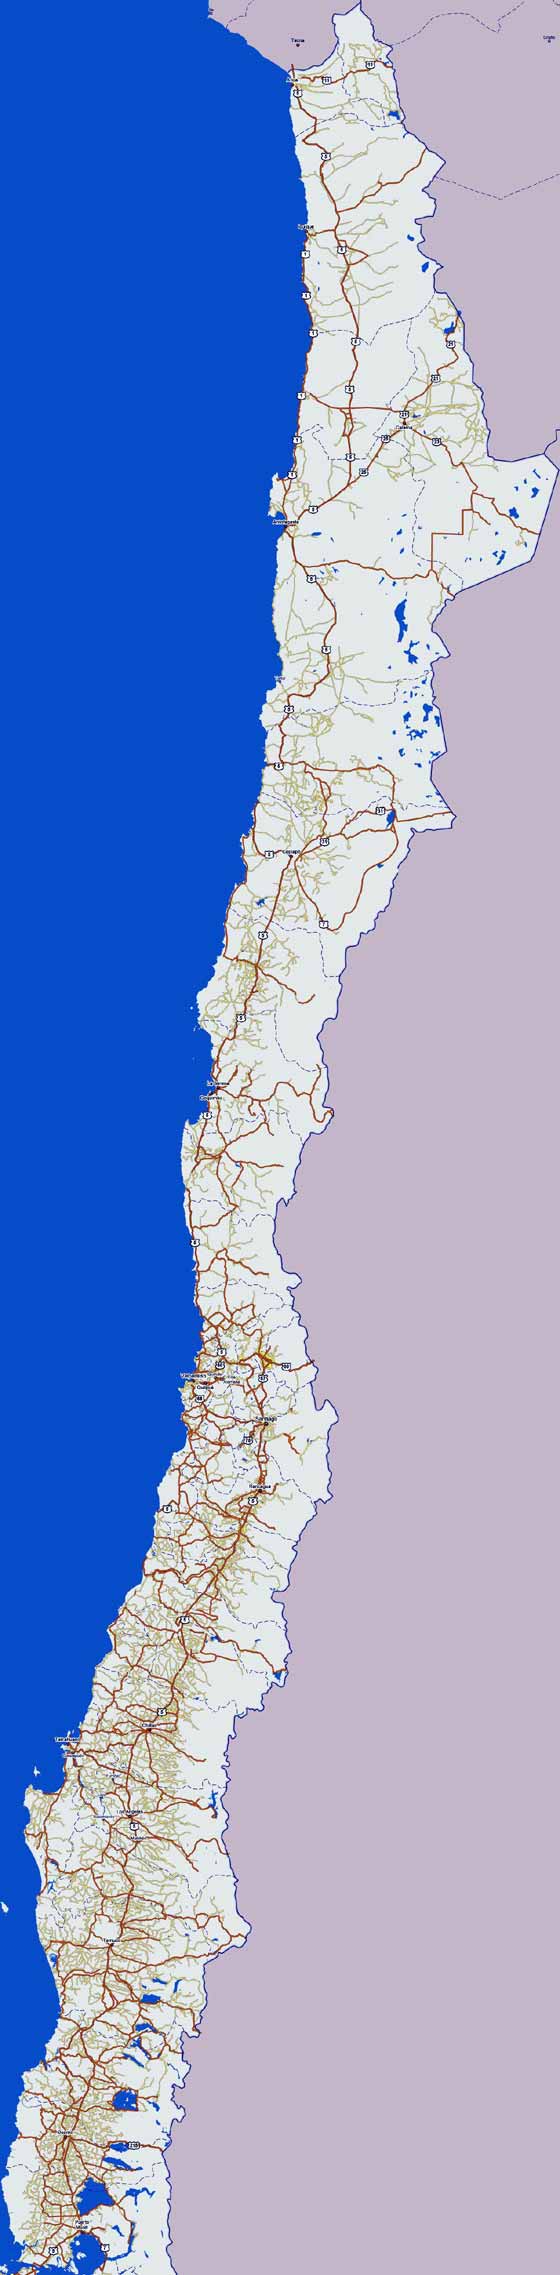 Gran mapa de Chile